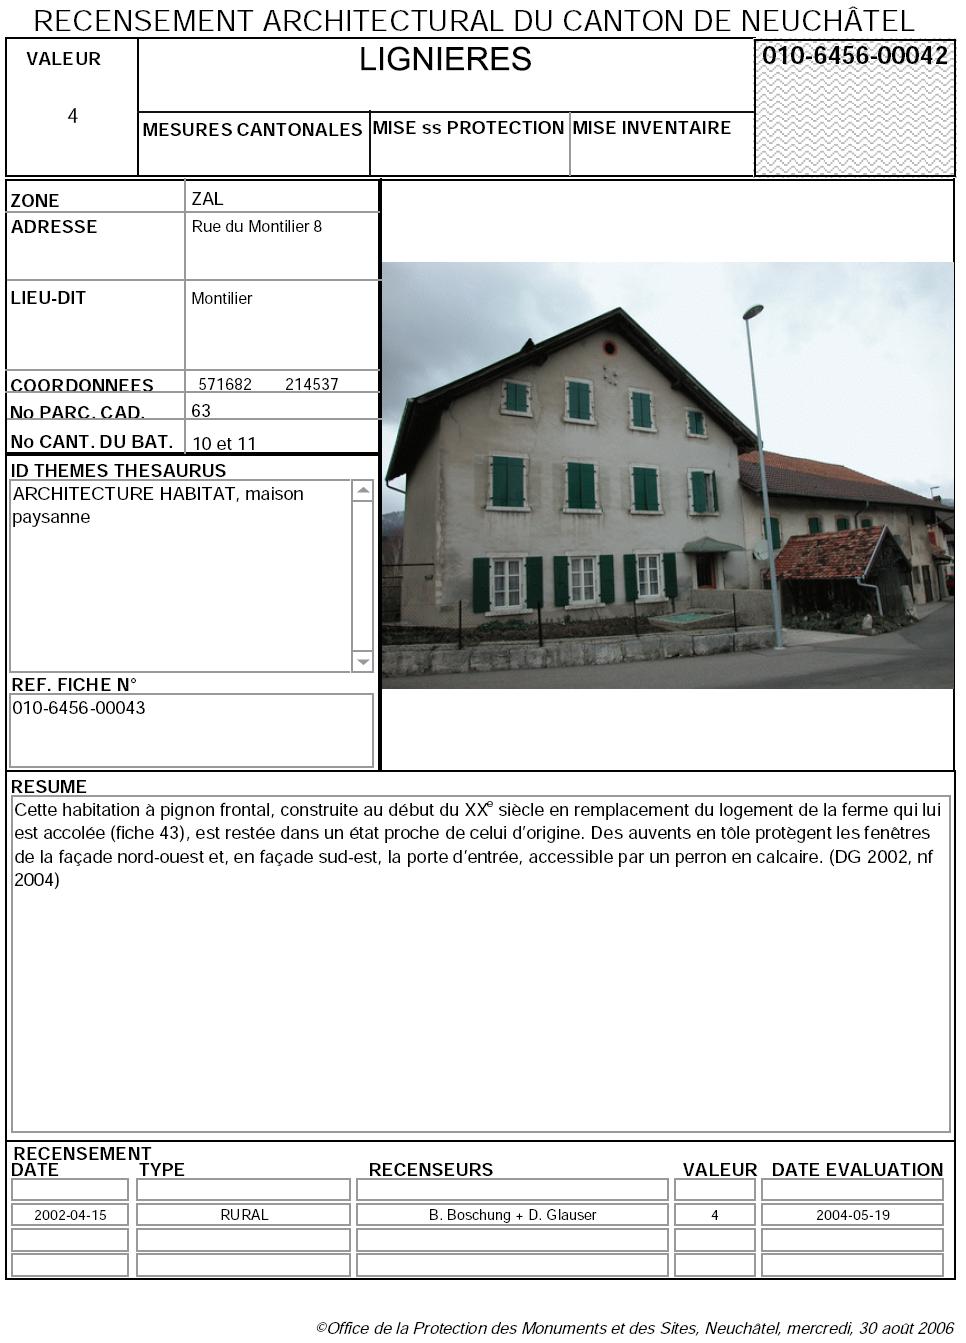 Recensement architectural du canton de Neuchâtel: Fiche 010-6456-00042